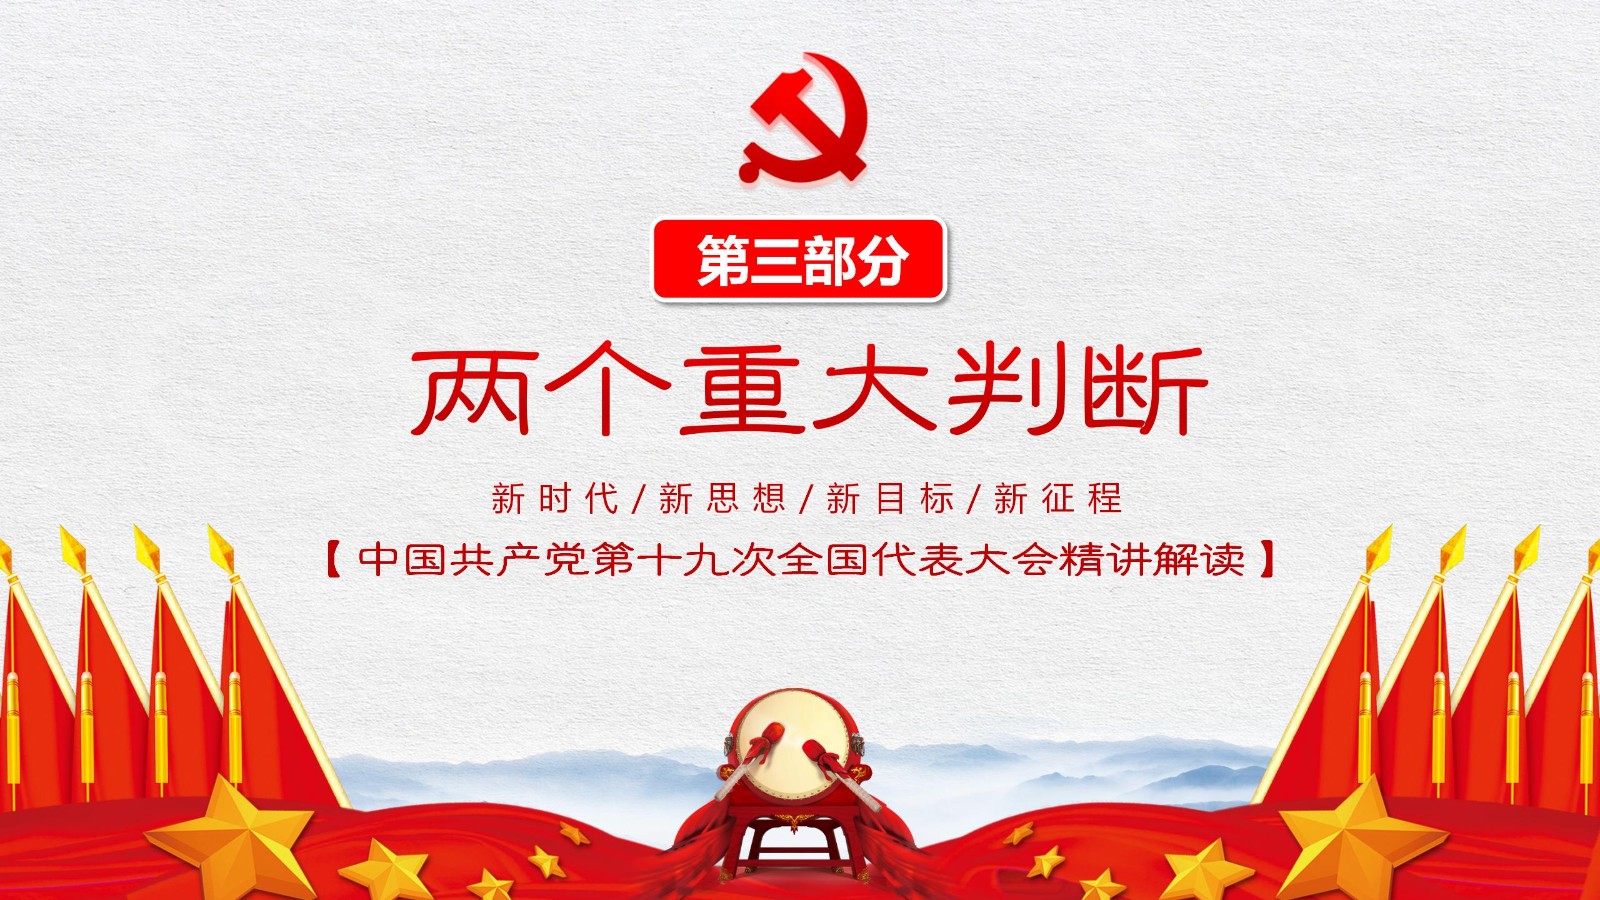 中国特色社会主义旗帜模板25